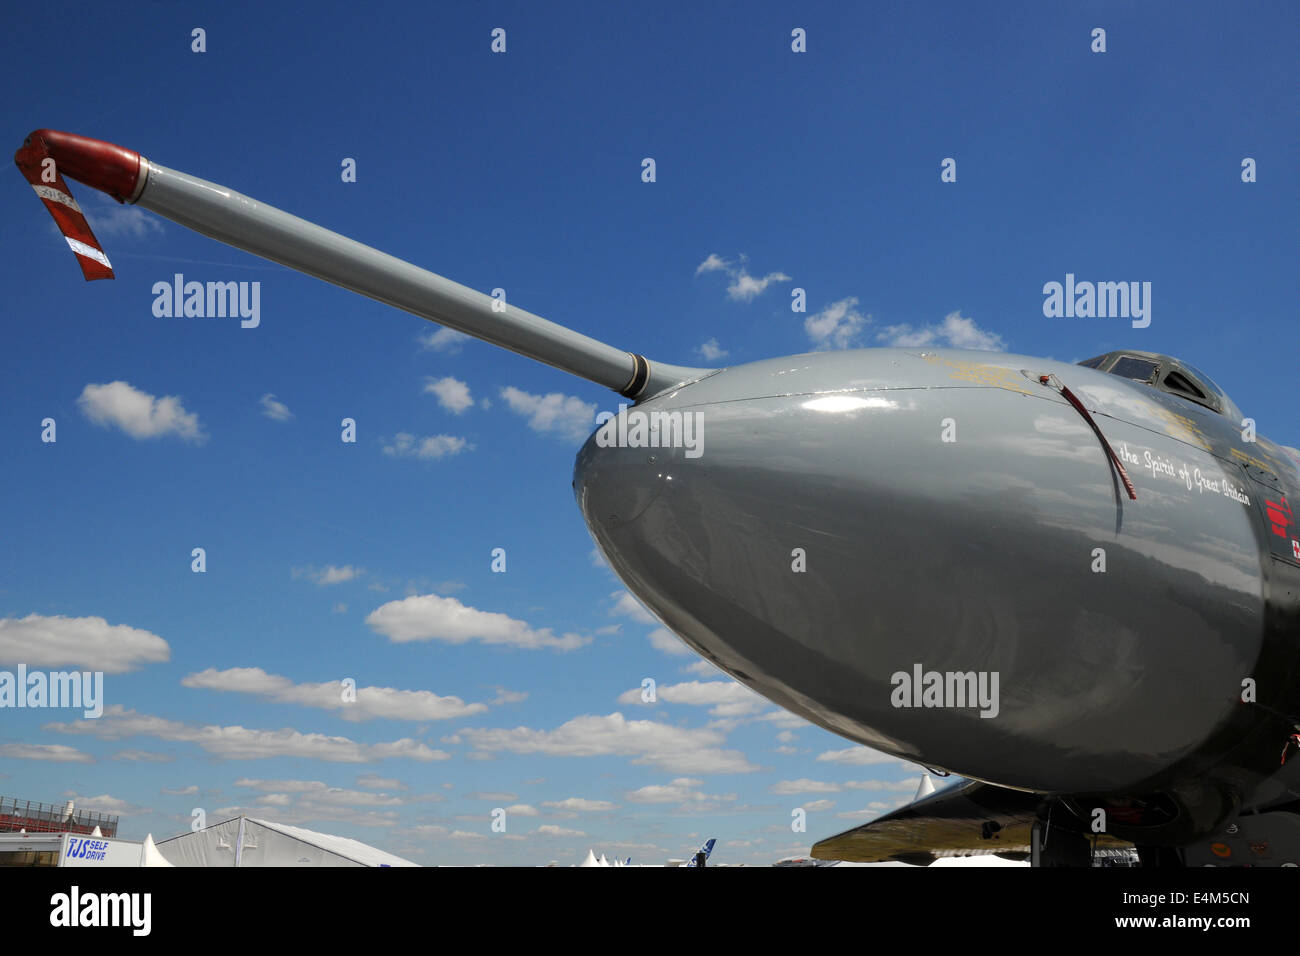 Farnborough, Großbritannien. 14. Juli 2014. Die Nase des ehrwürdigen Vulcan-Bomber auf dem Display auf der Farnborough International Air Show Farnborough, UK. 14. Juli 2014. Bildnachweis: Martin Brayley/Alamy Live-Nachrichten Stockfoto